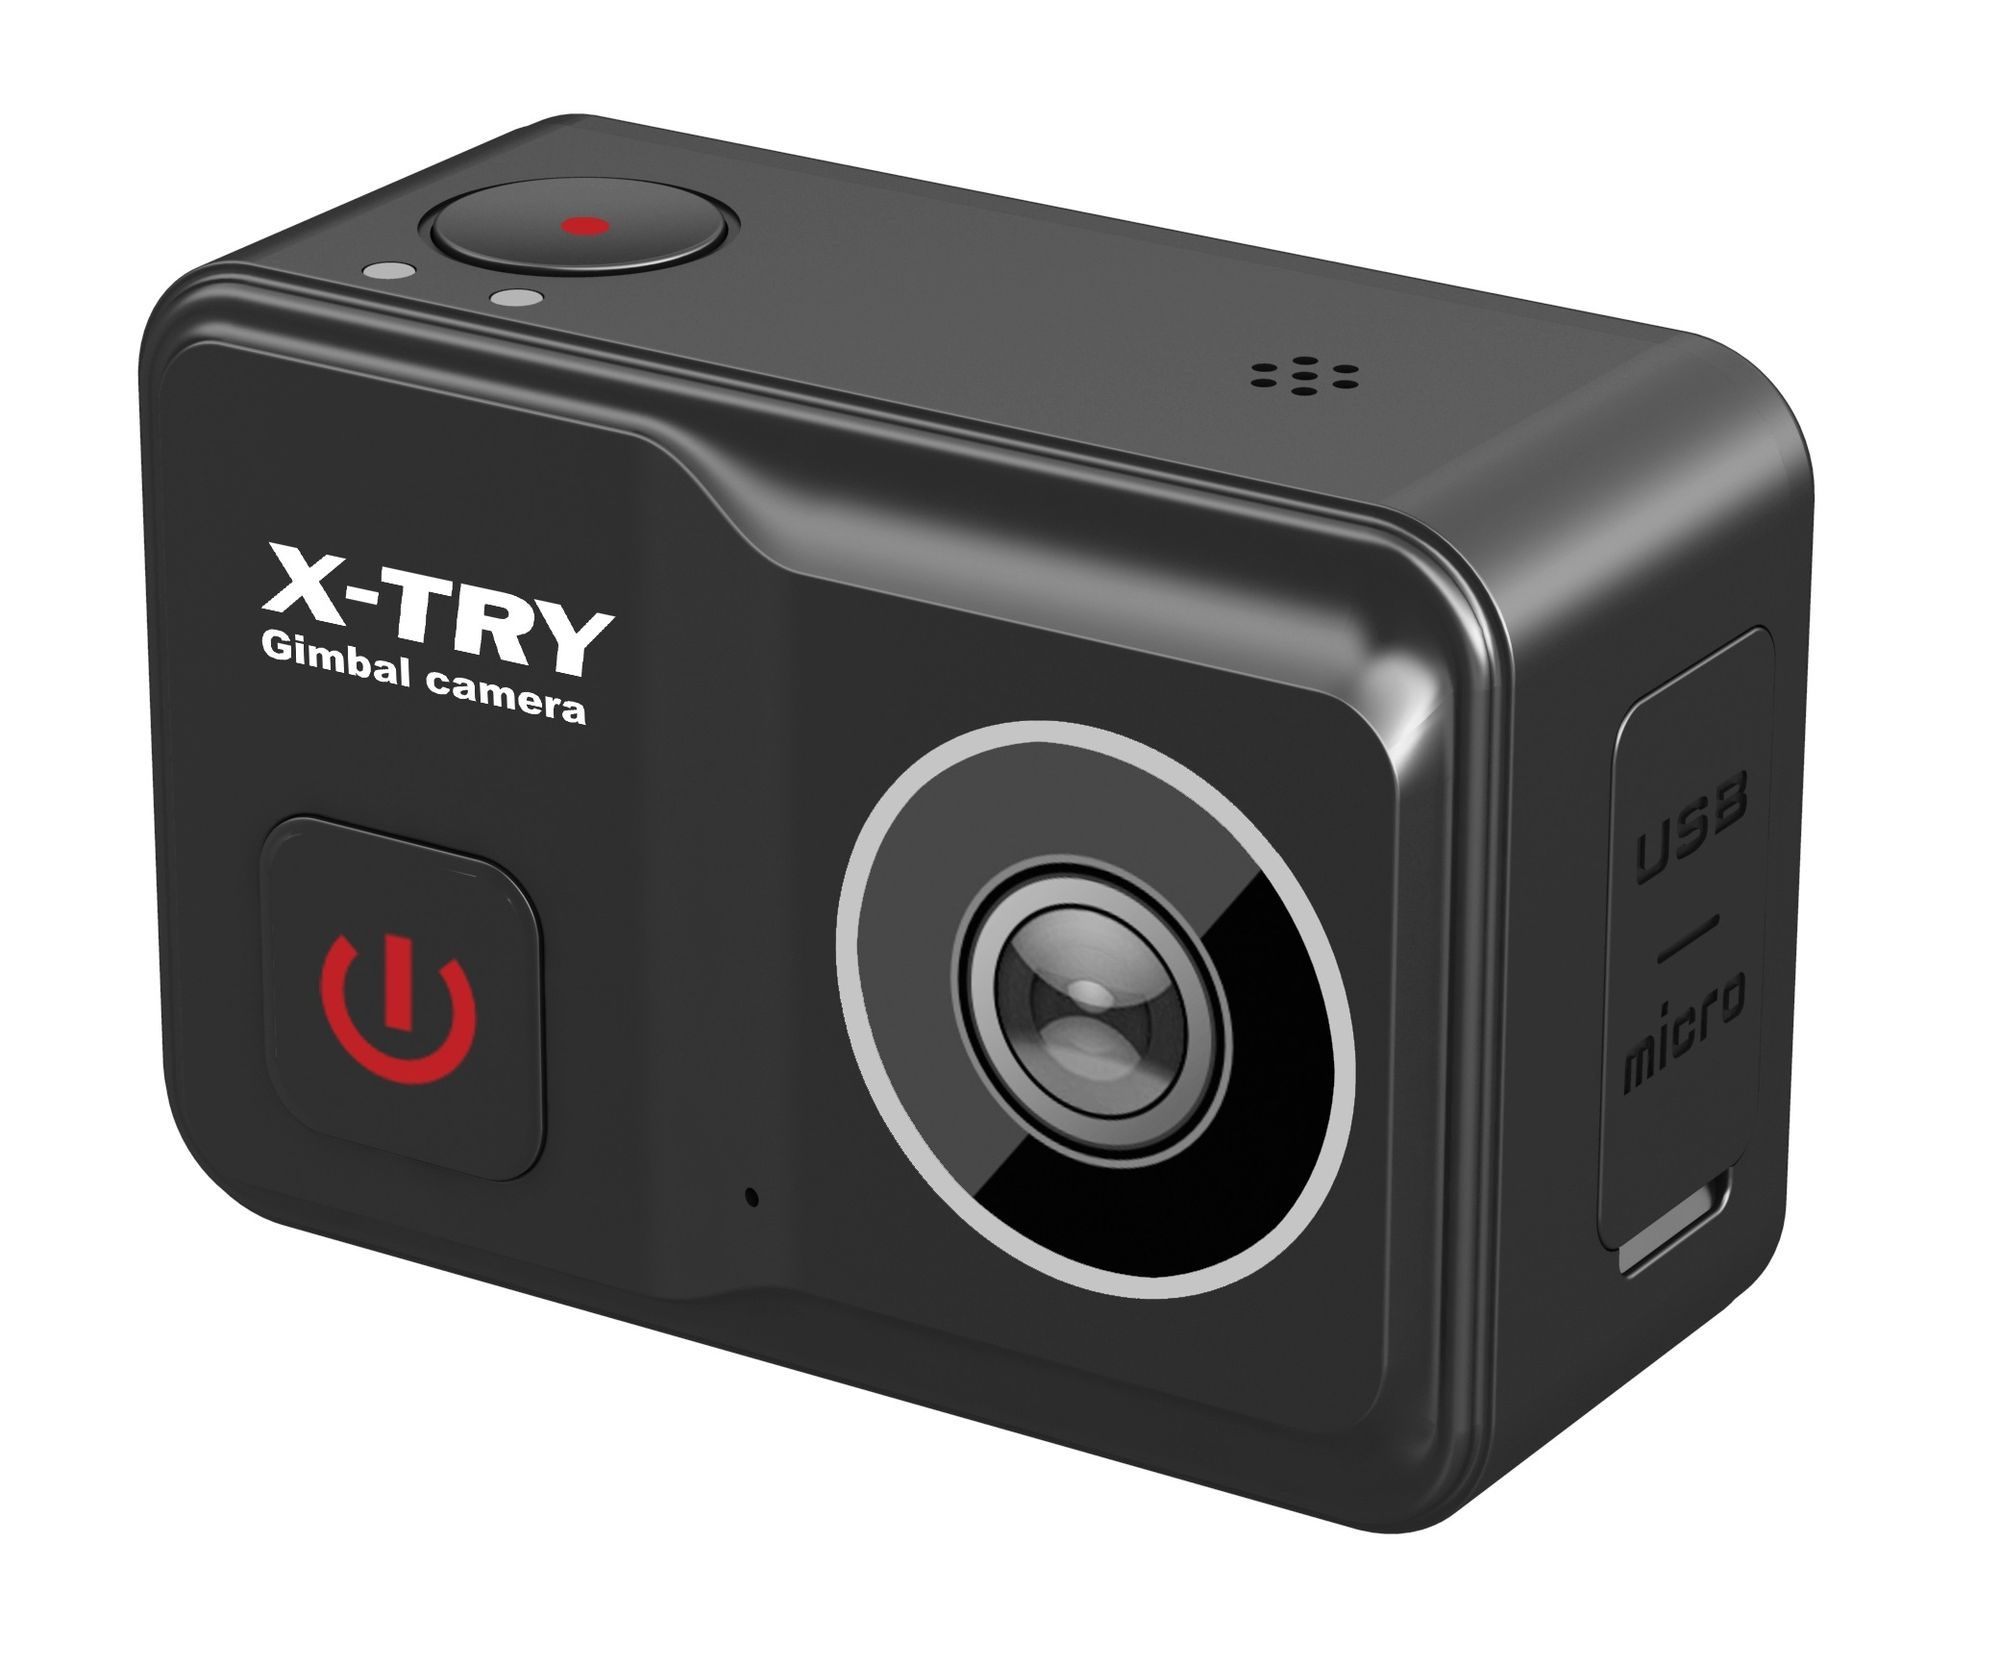 Экшн камера X-Try XTC500 Gimbal Real 4K/60FPS WDR Wi-Fi Standart, цвет черный